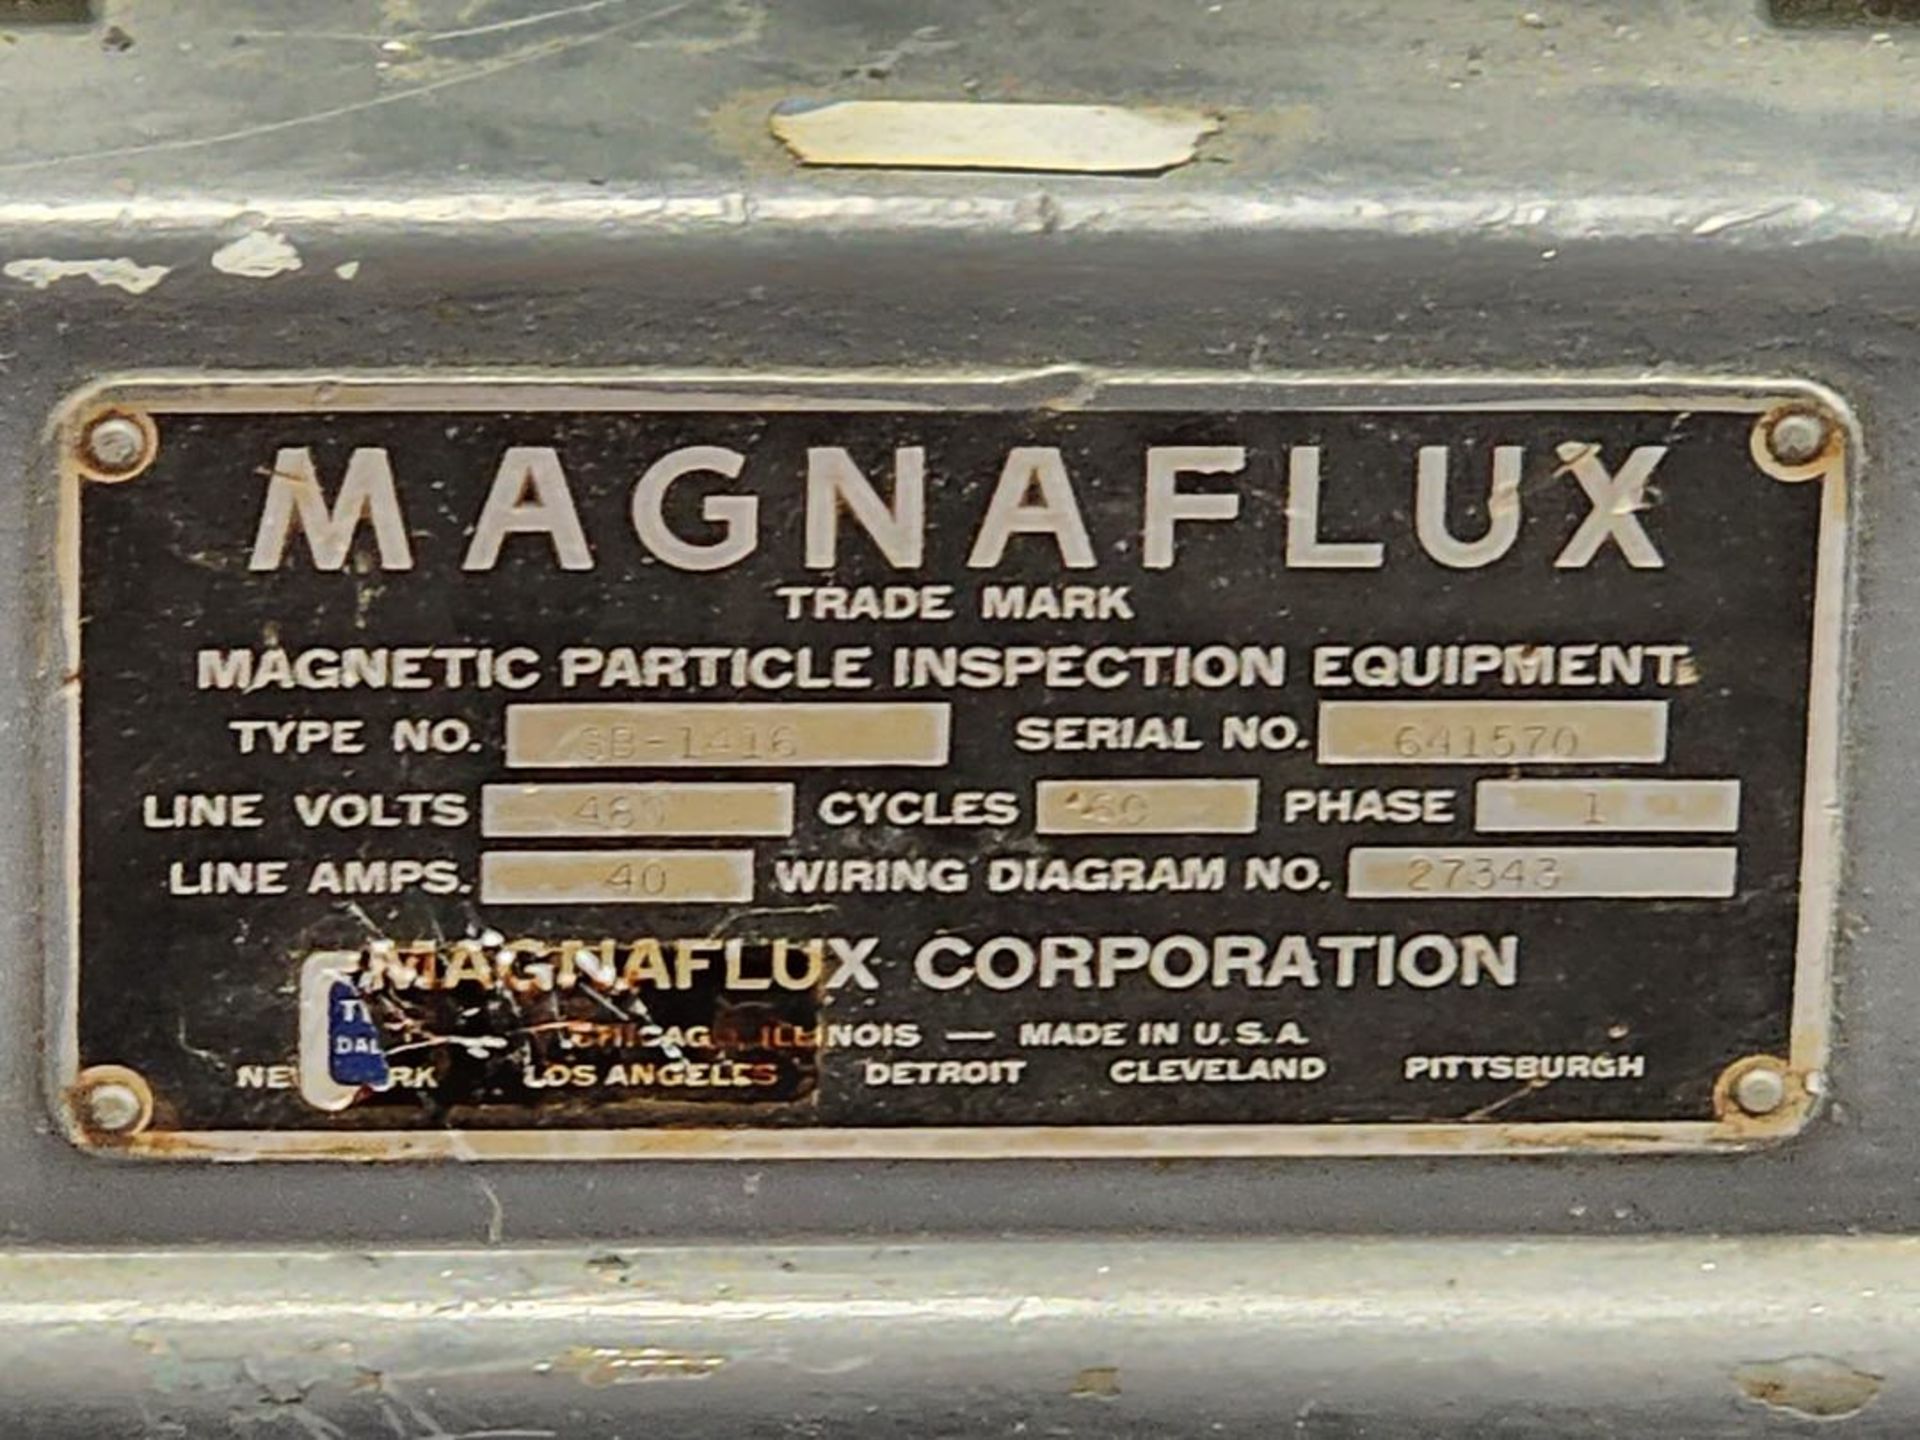 Magnaflux SB-1416 Demagnitizer (Asset# 70606) - Image 7 of 7